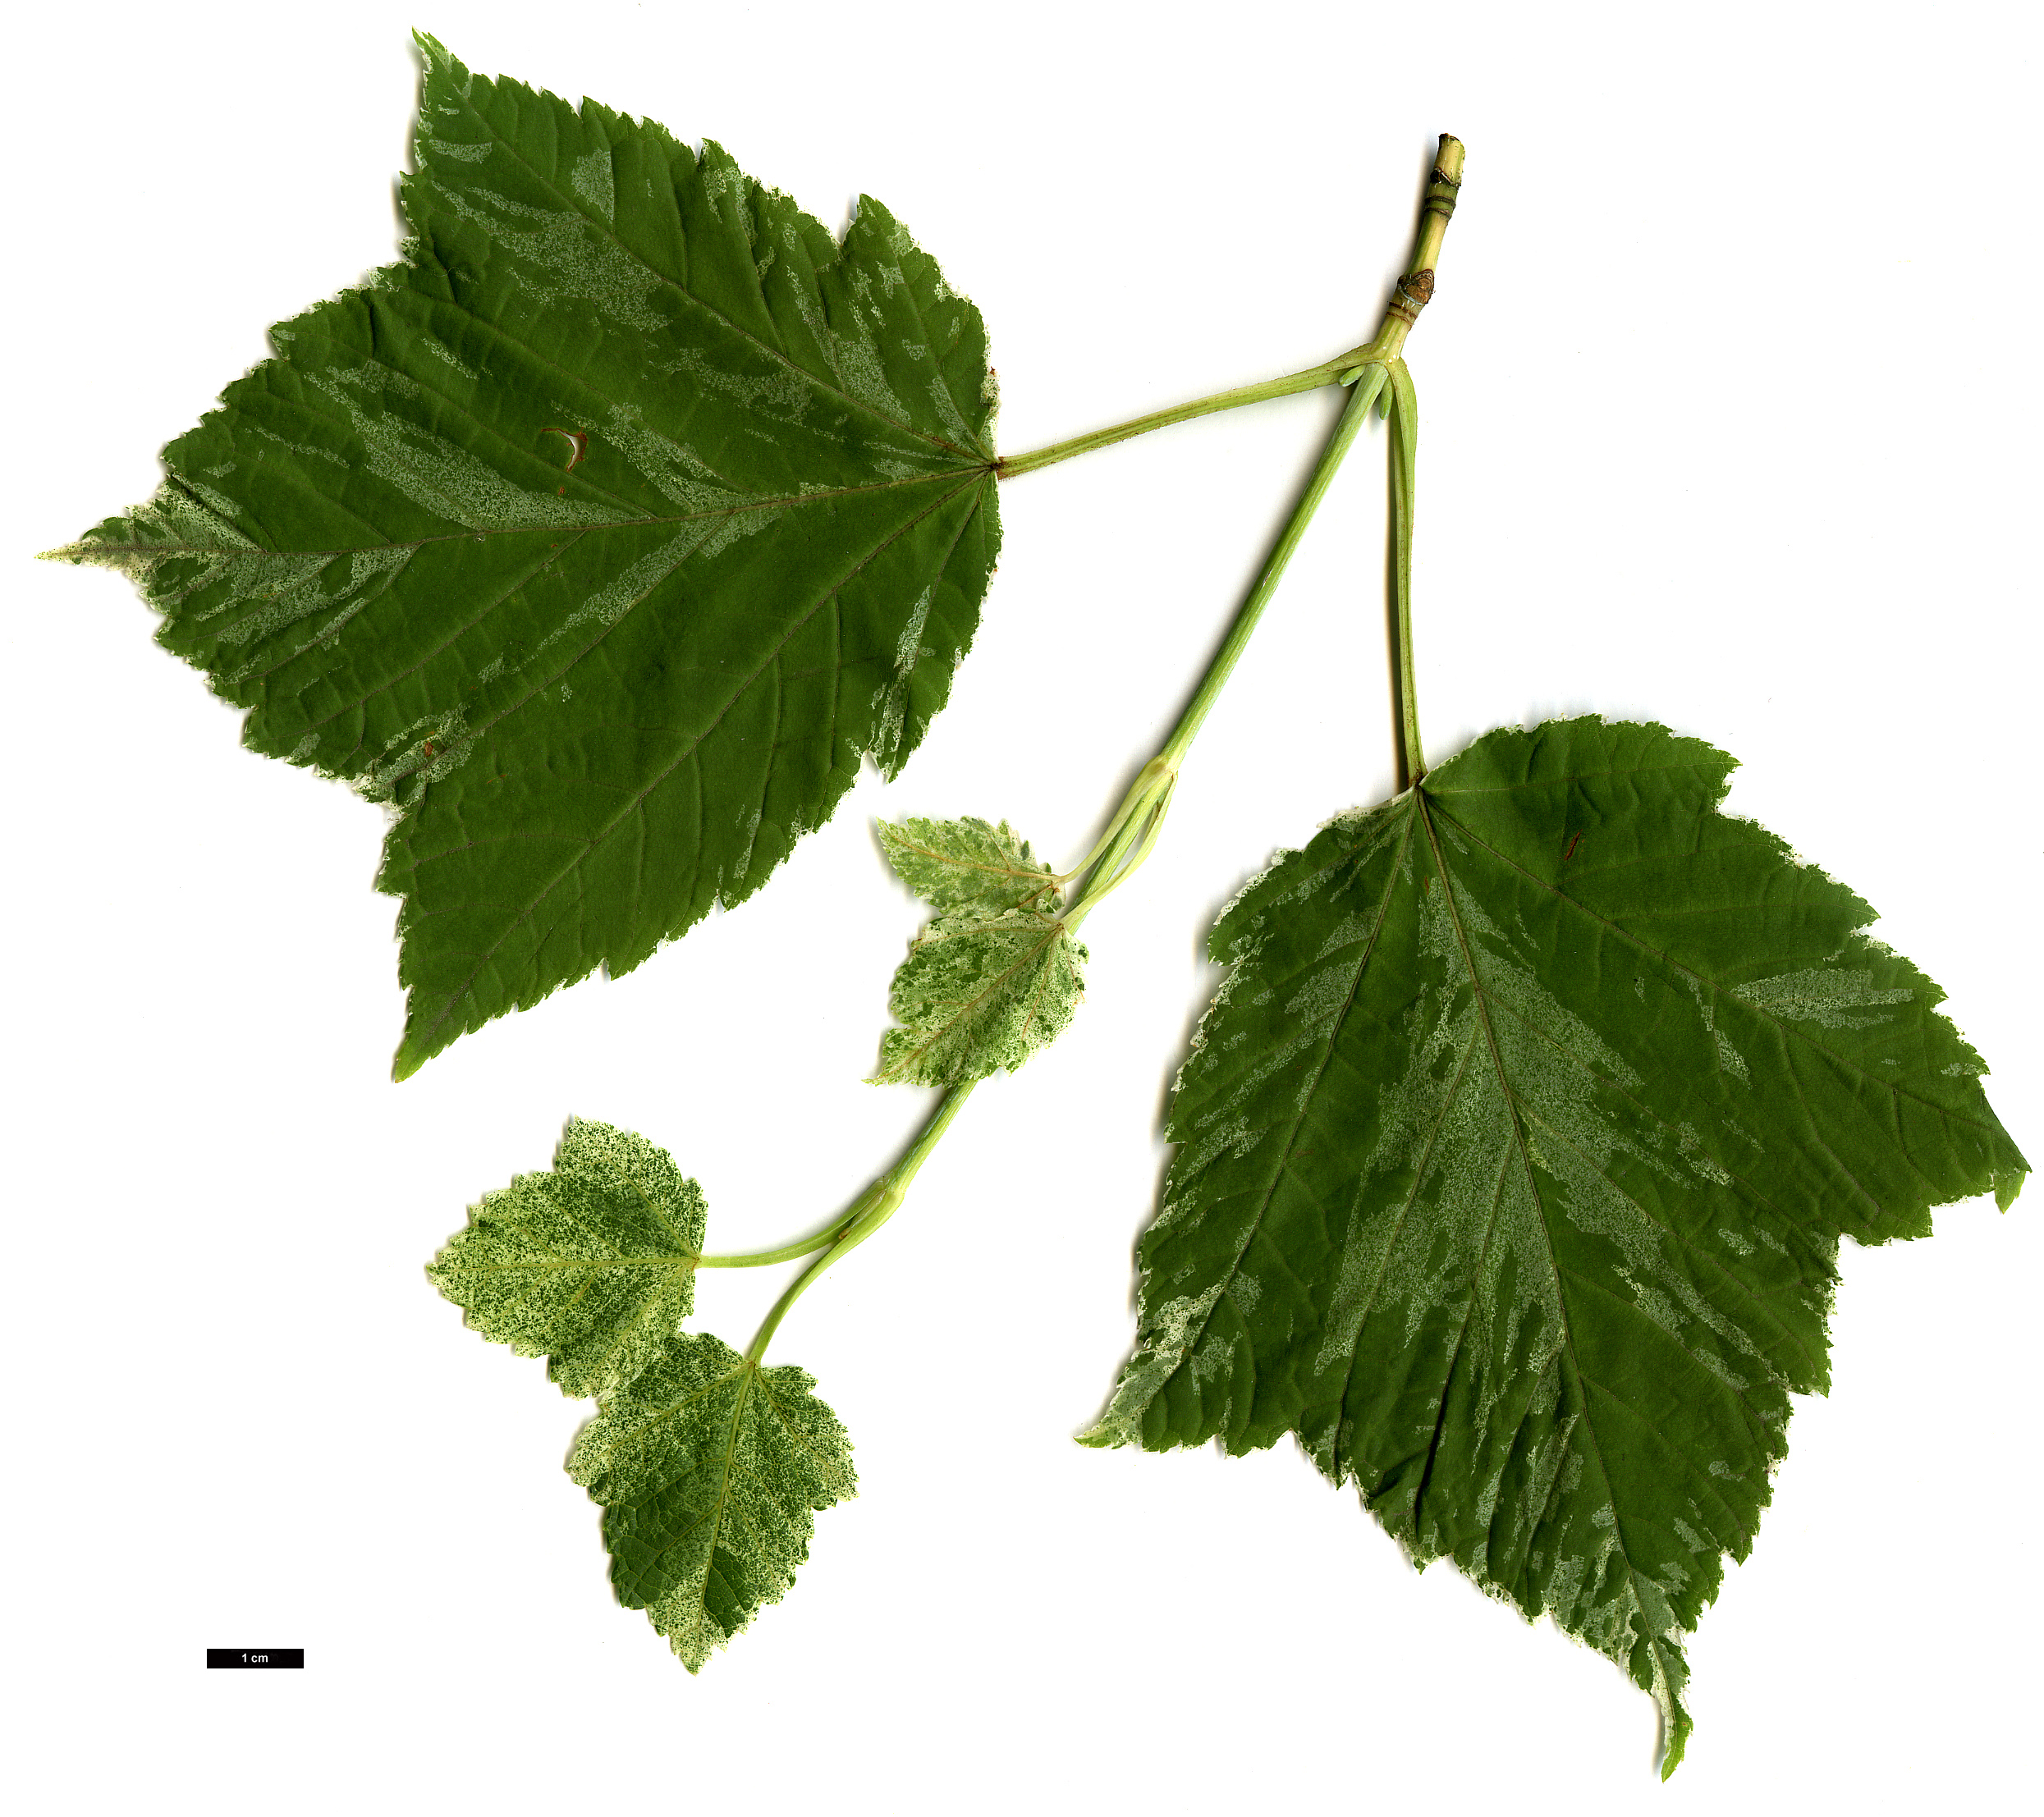 High resolution image: Family: Sapindaceae - Genus: Acer - Taxon: rufinerve - SpeciesSub: 'Albolimbatum'